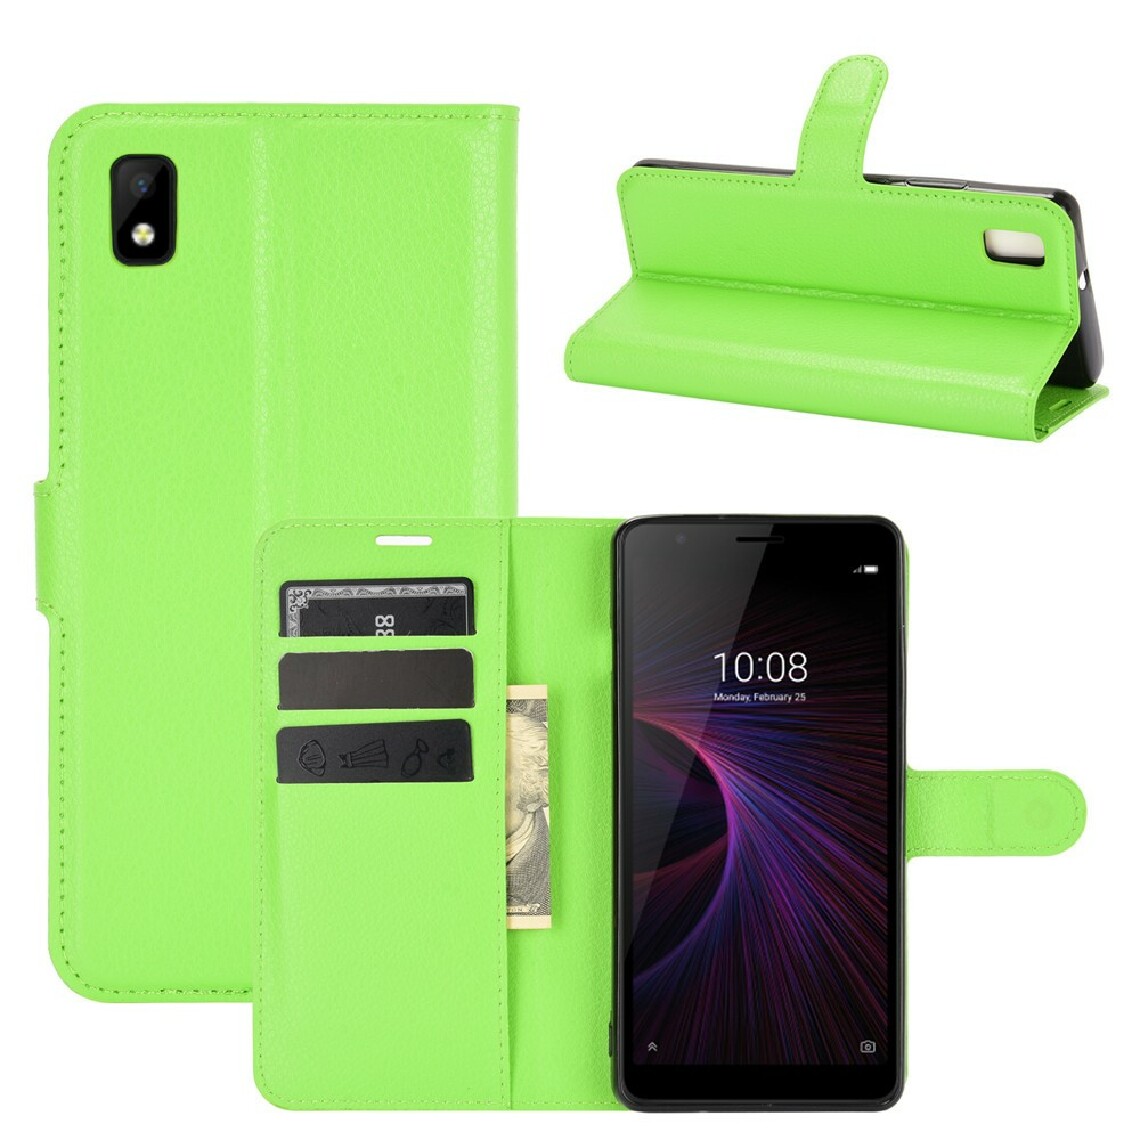 Other - Etui en PU texture de litchi avec support vert pour votre ZTE Blade L210 - Coque, étui smartphone